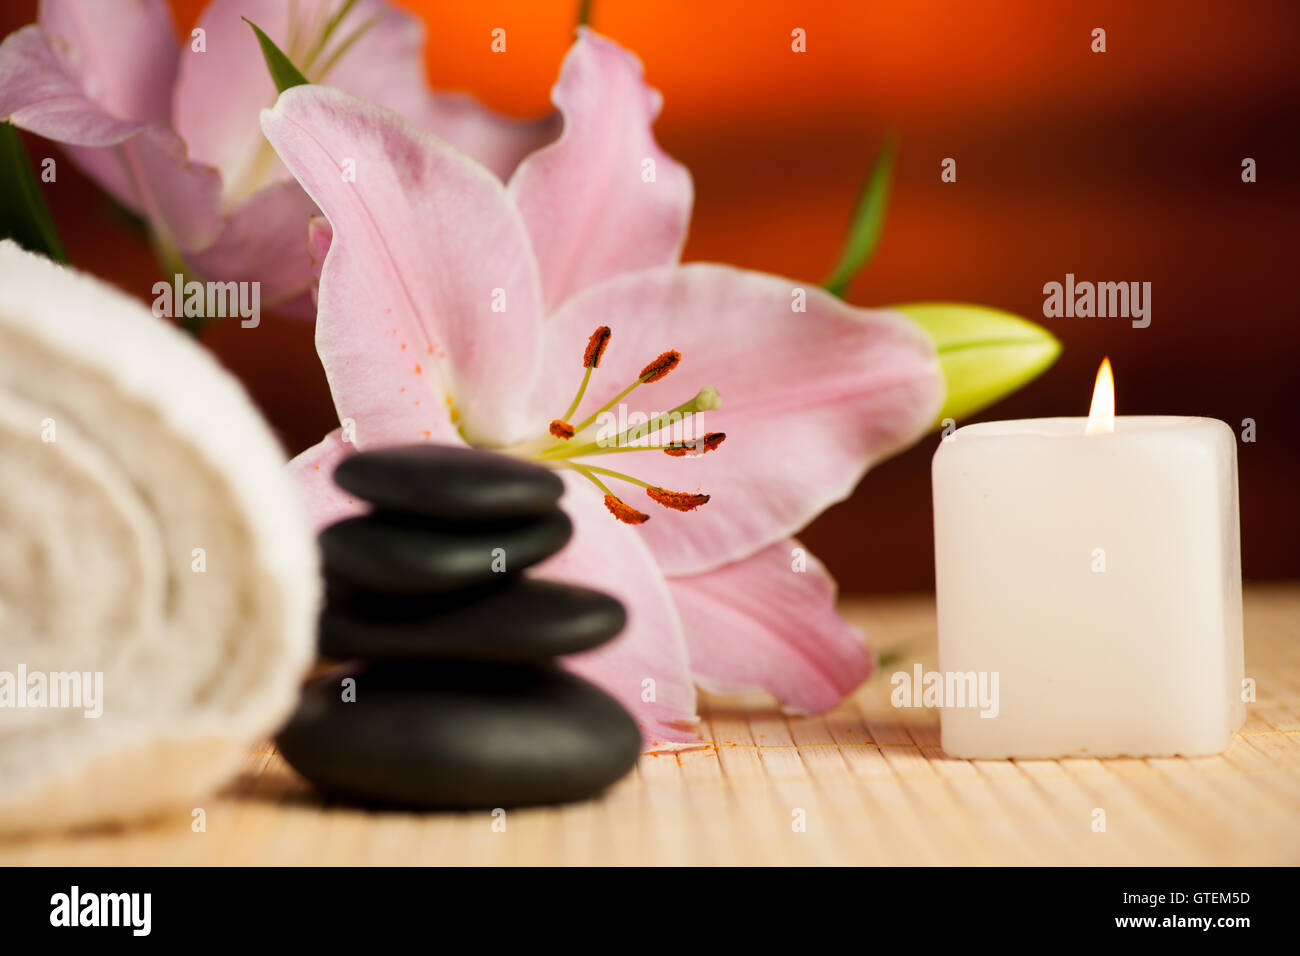 Spa-Konzept der Lilie Blume, Handtücher, Meersalz, Kerze und Crystal Rock rosa Quarz auf warmen hölzernen Hintergrund. Stockfoto